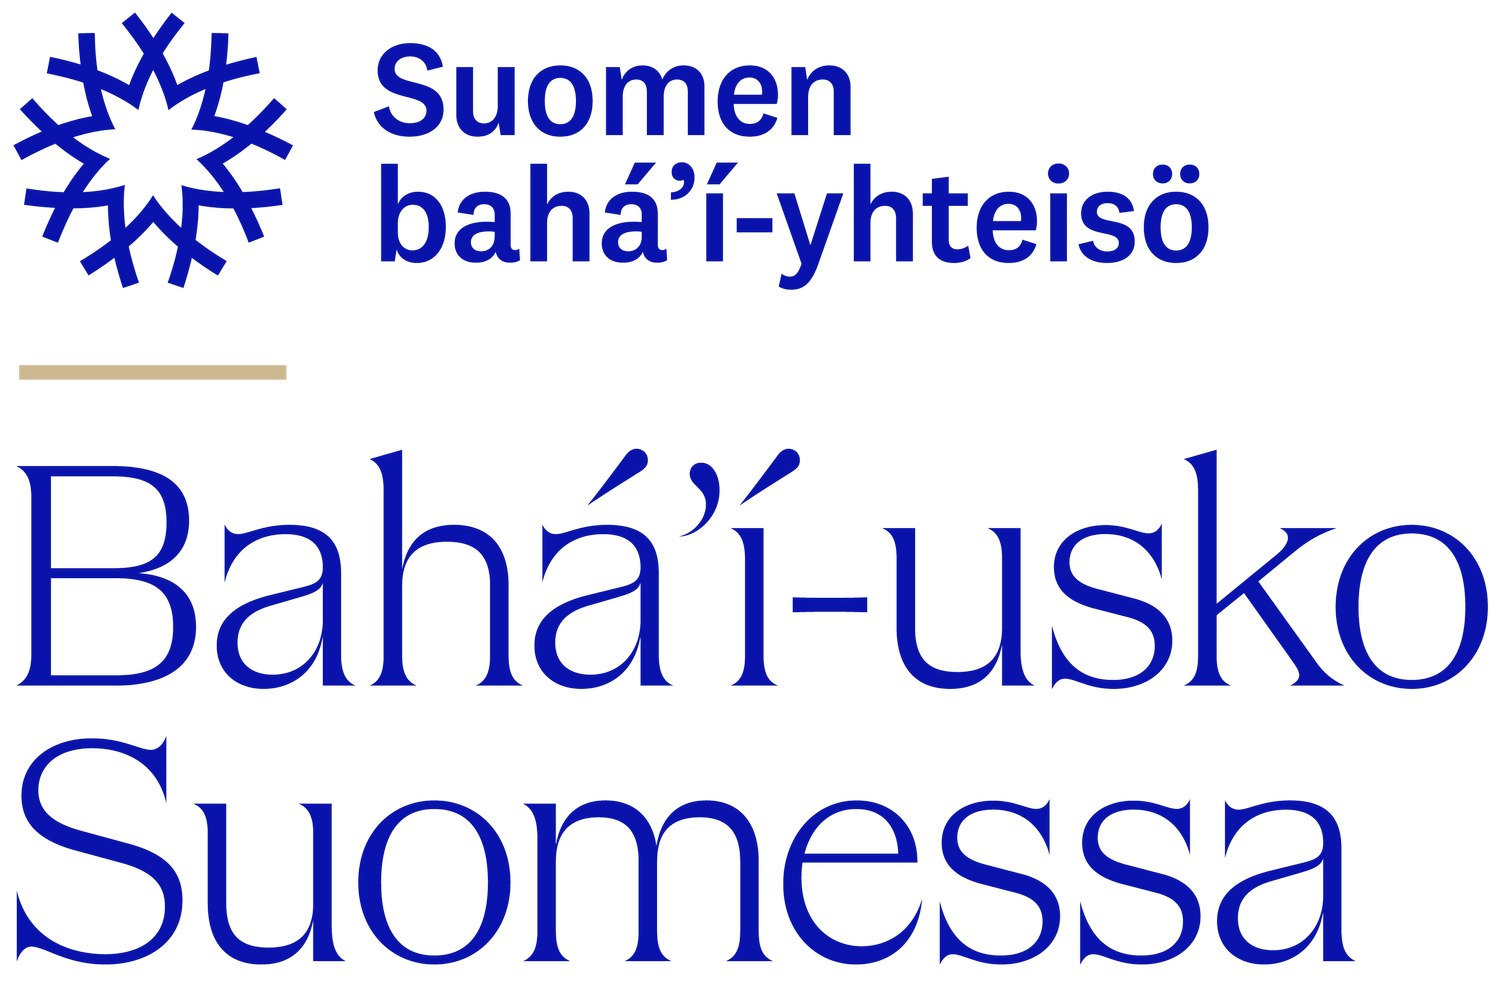 Bahá’í-usko Suomessa – Suomen bahá’í-yhteisö